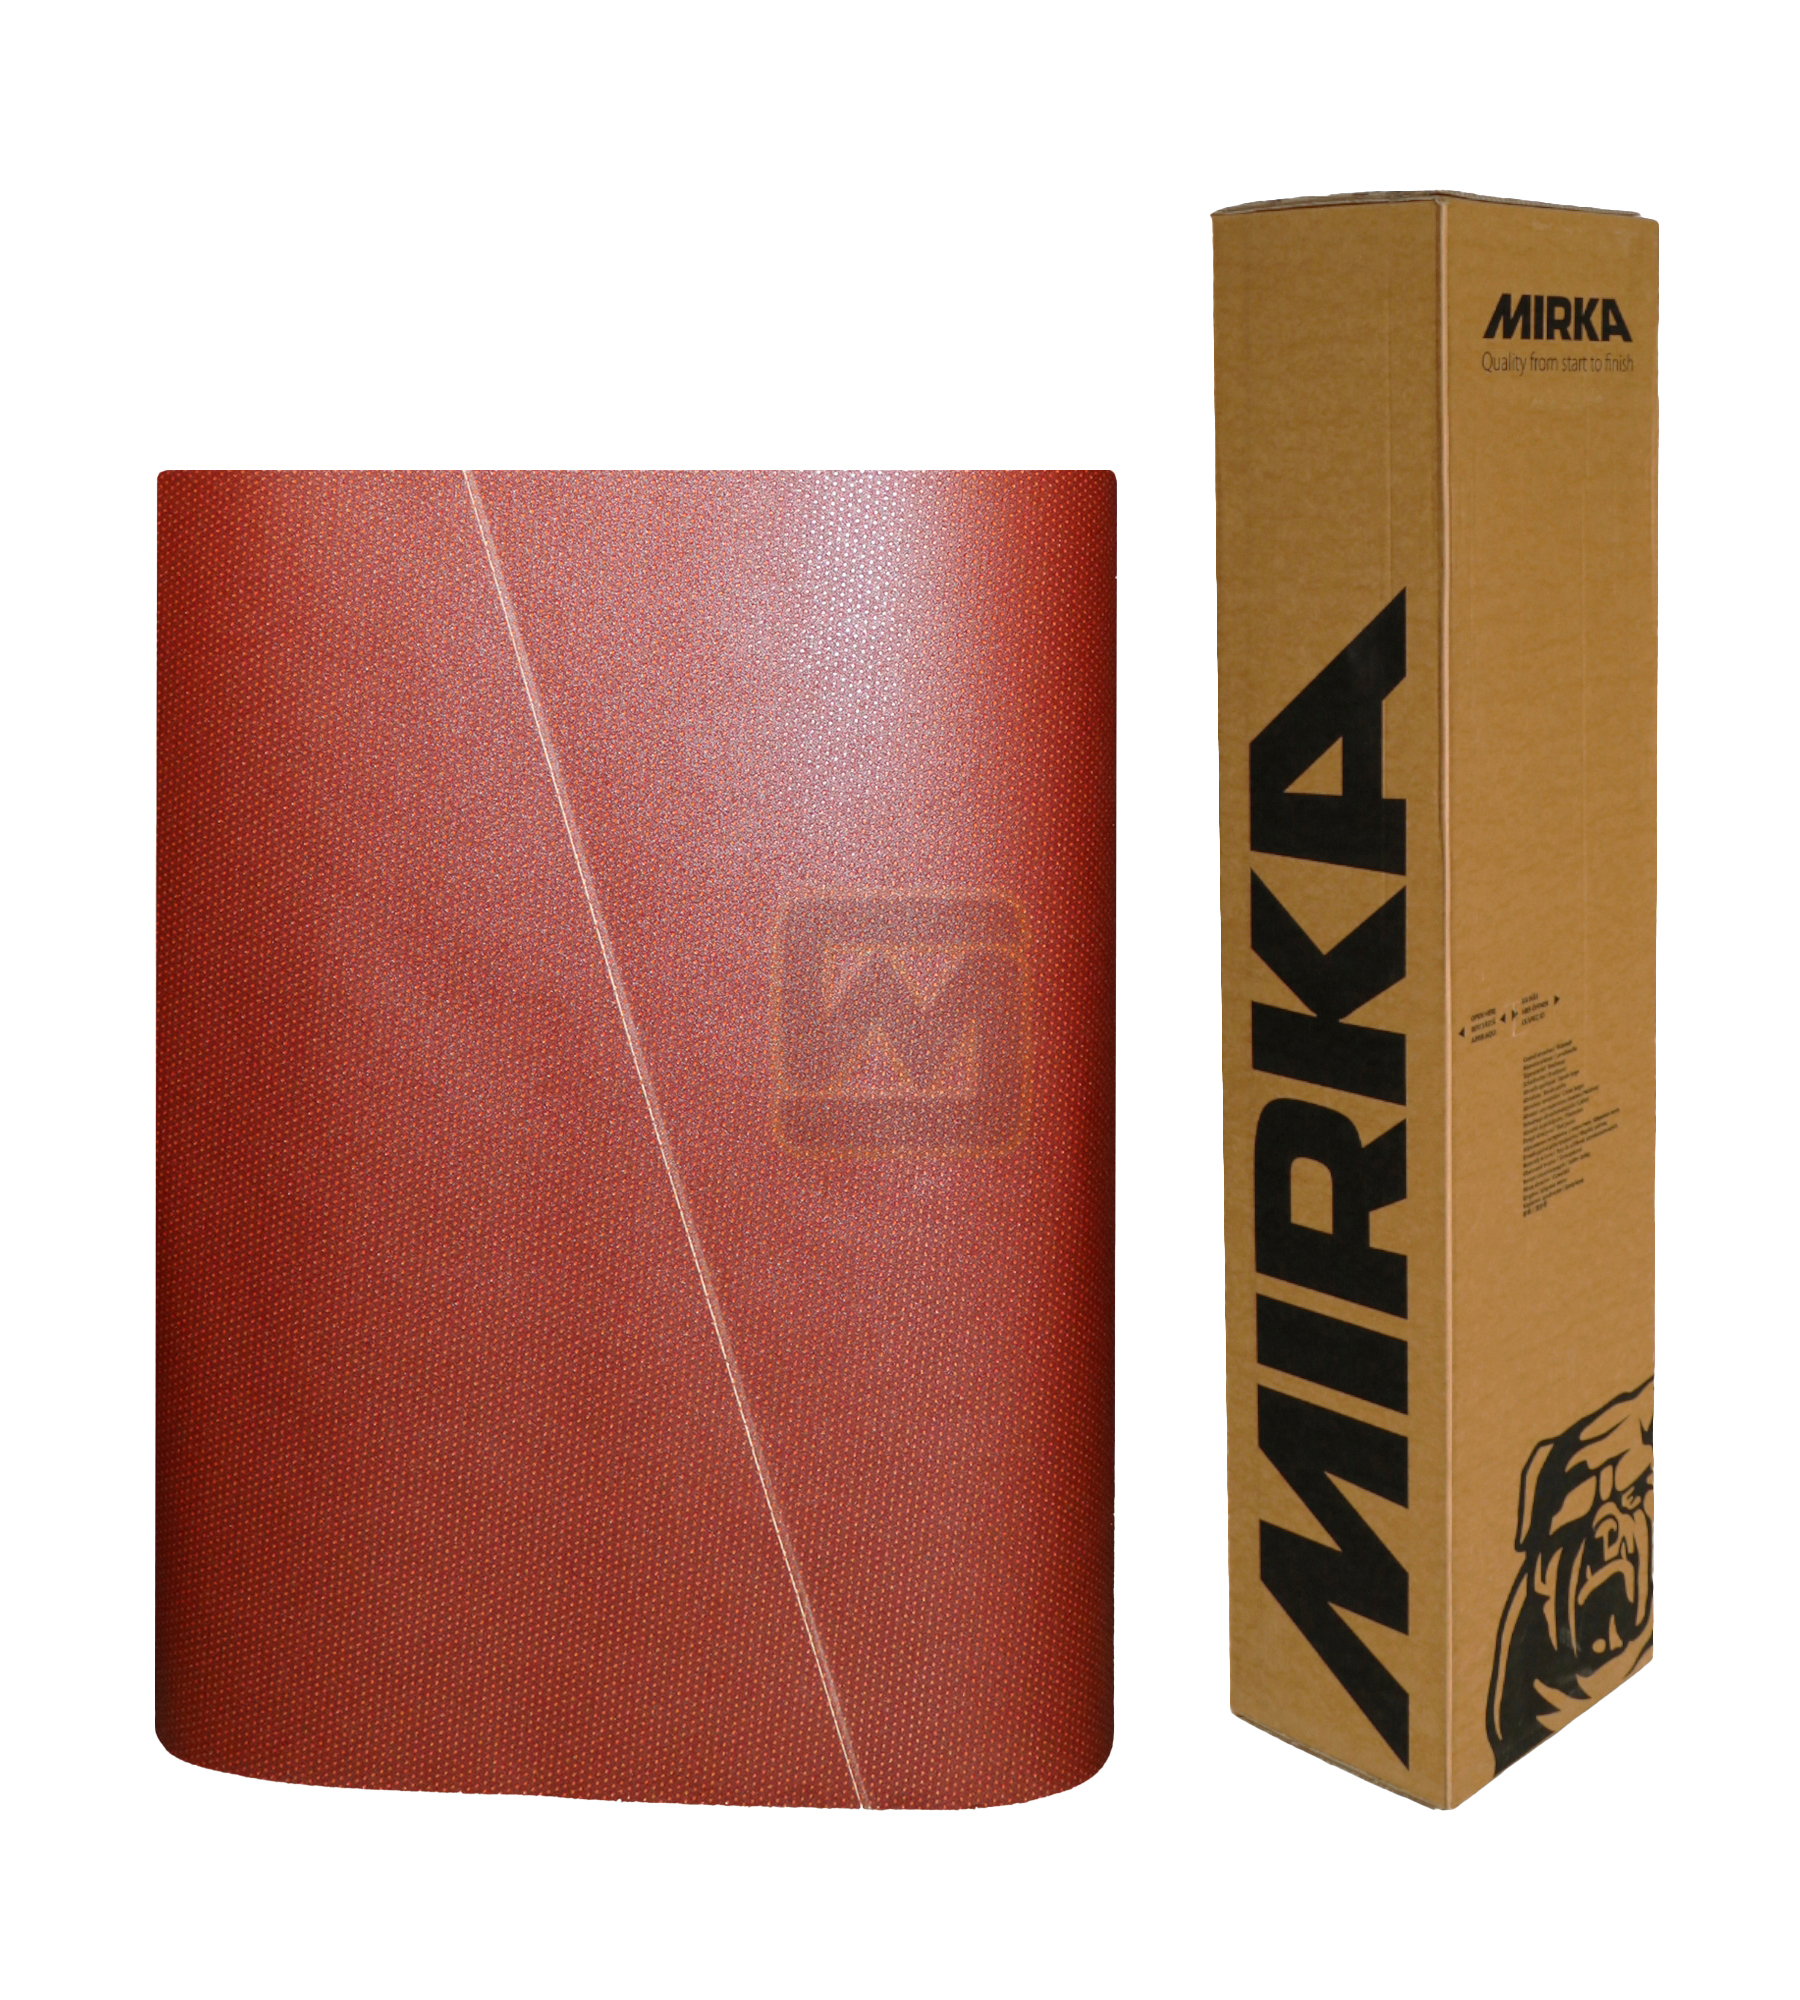 Abbildung Mirka Ultimax 1100x1900mm Breitband mit Verpackung.